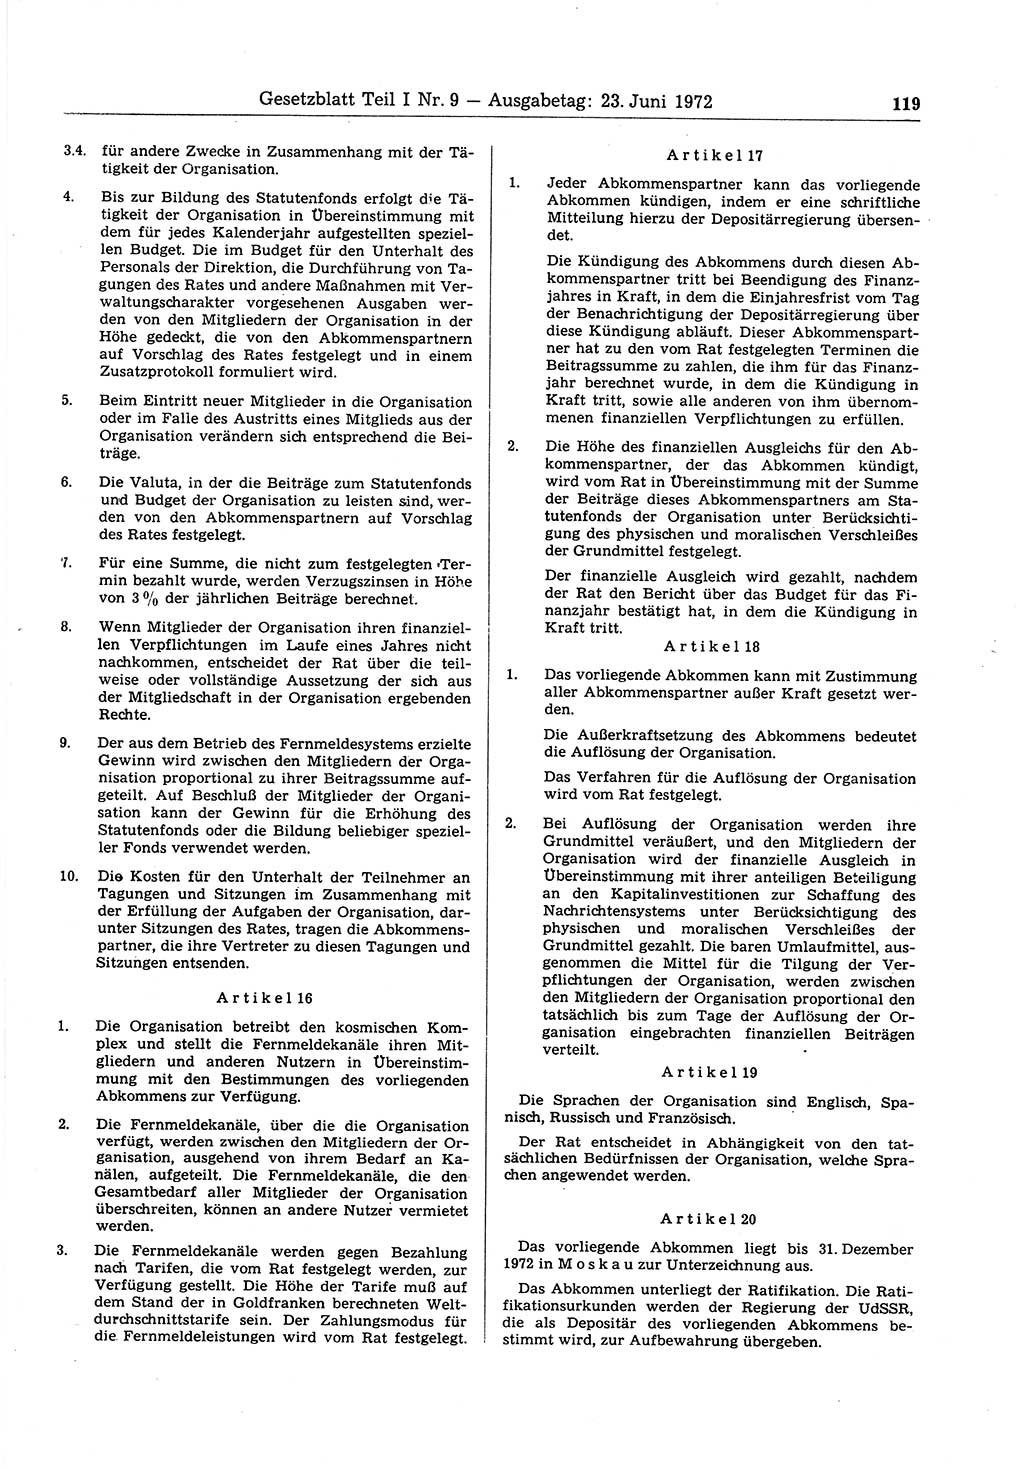 Gesetzblatt (GBl.) der Deutschen Demokratischen Republik (DDR) Teil Ⅰ 1972, Seite 119 (GBl. DDR Ⅰ 1972, S. 119)